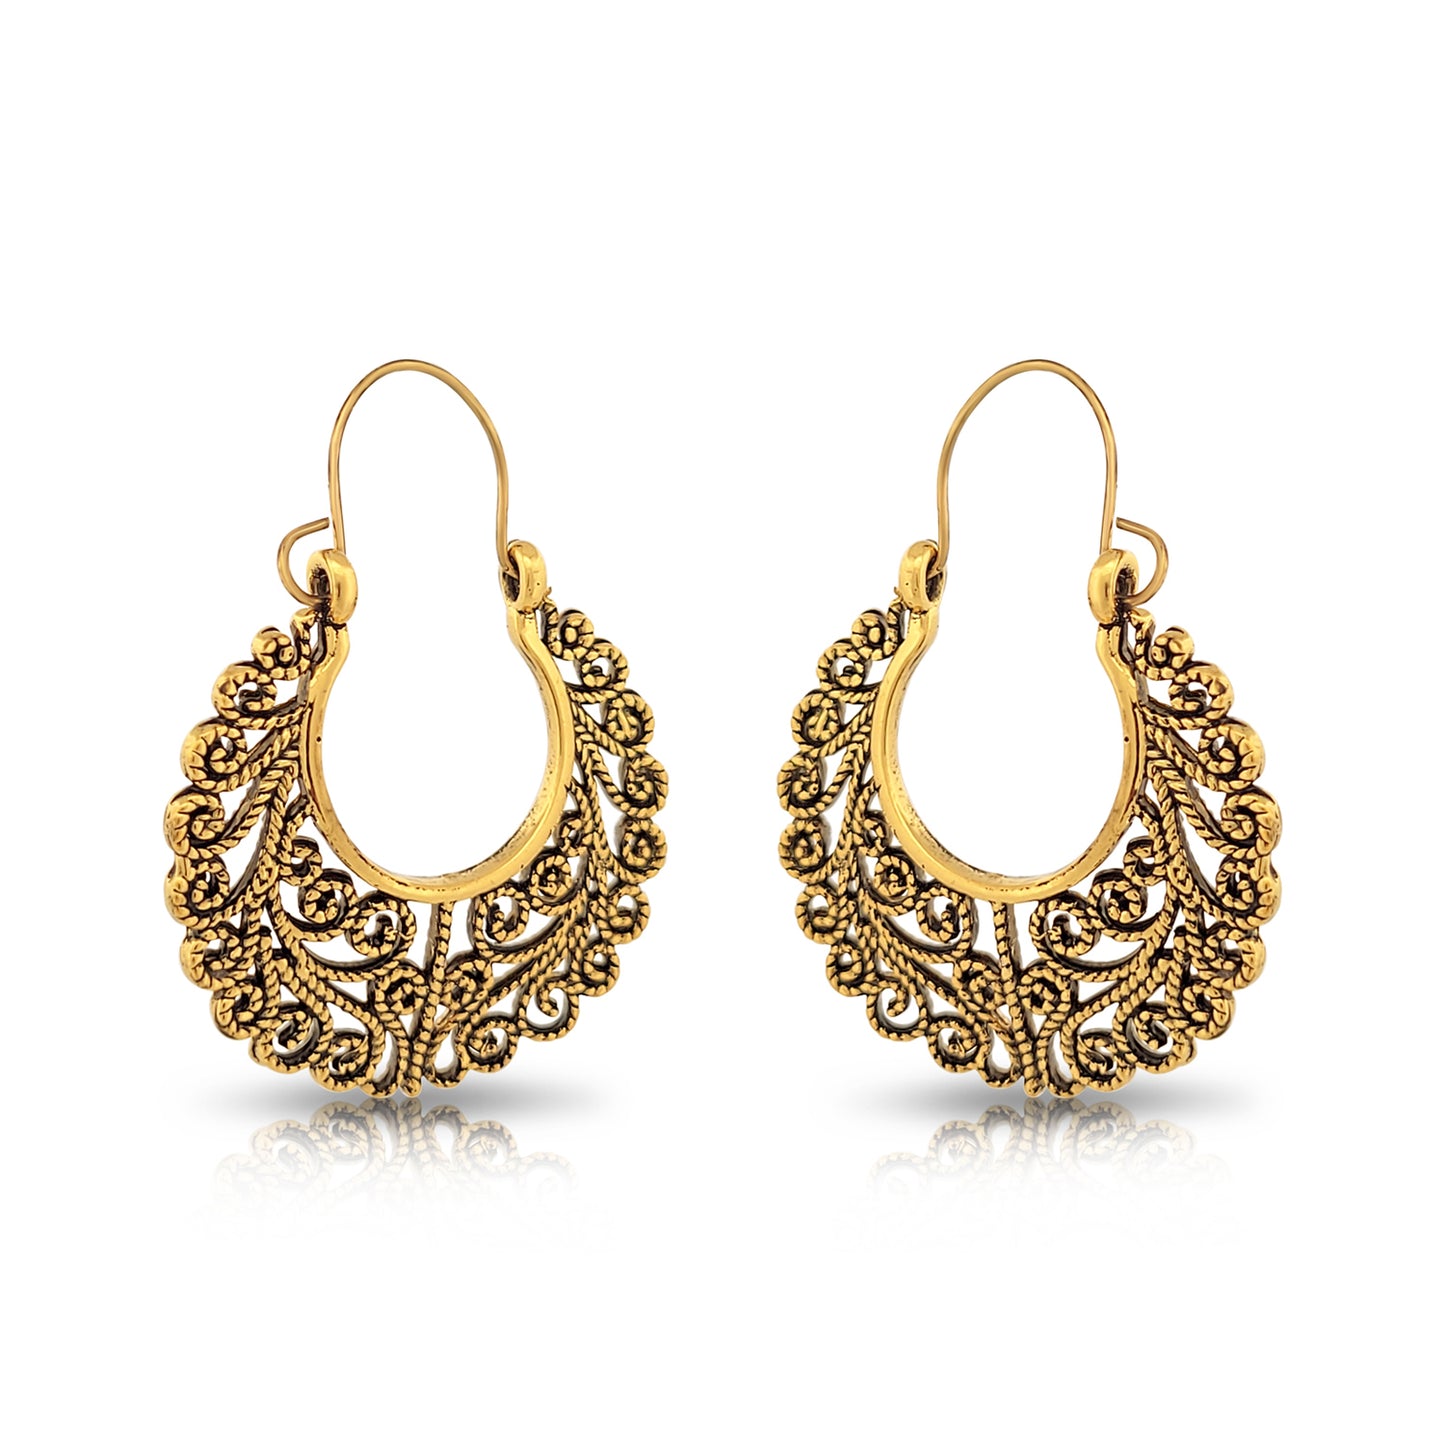 BESHEEK Goldtone Filigree Swirl Latch earrings | Hypoallergenic Boho Beach Gala Wedding Style Fashion Earrings